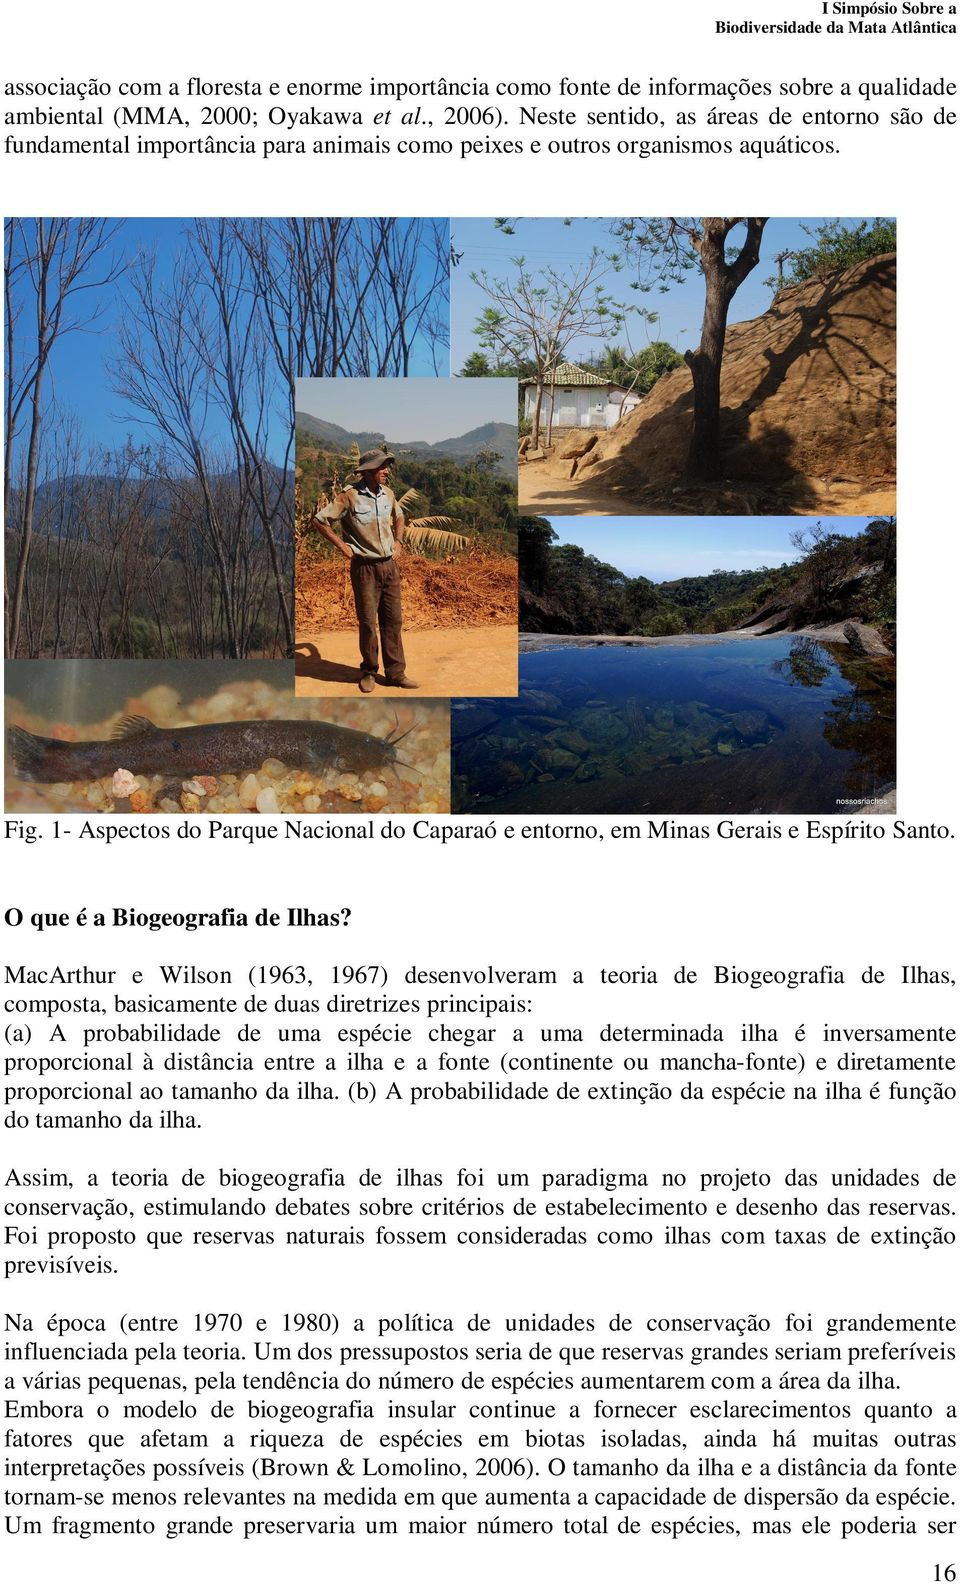 1- Aspectos do Parque Nacional do Caparaó e entorno, em Minas Gerais e Espírito Santo. O que é a Biogeografia de Ilhas?